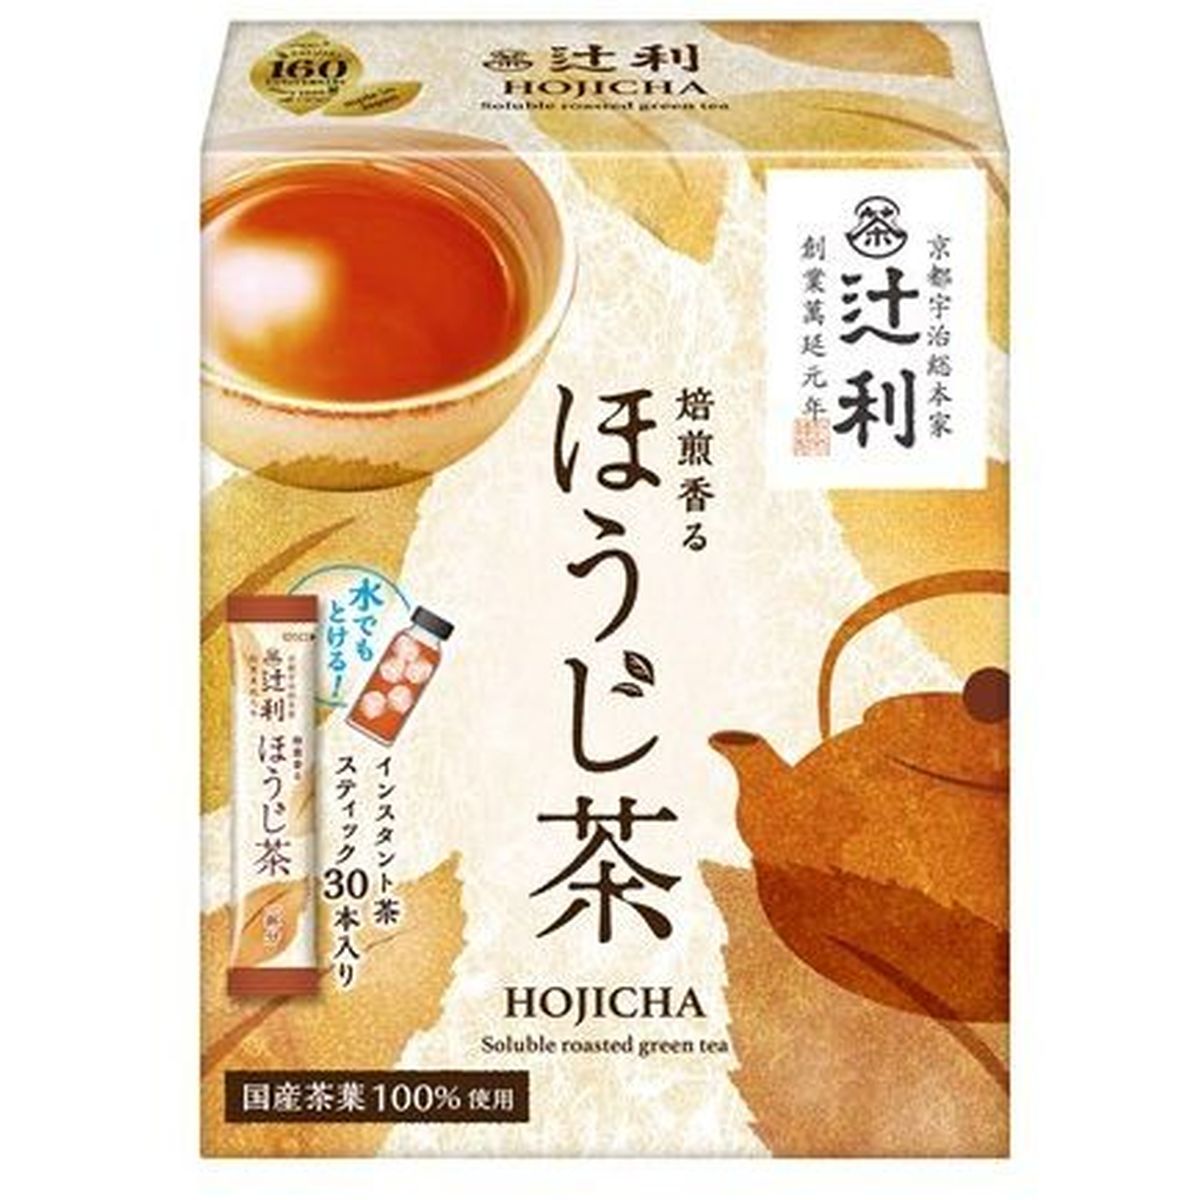 【6個入リ】辻利 焙煎香ルホウジ茶 スティック 1gX30本